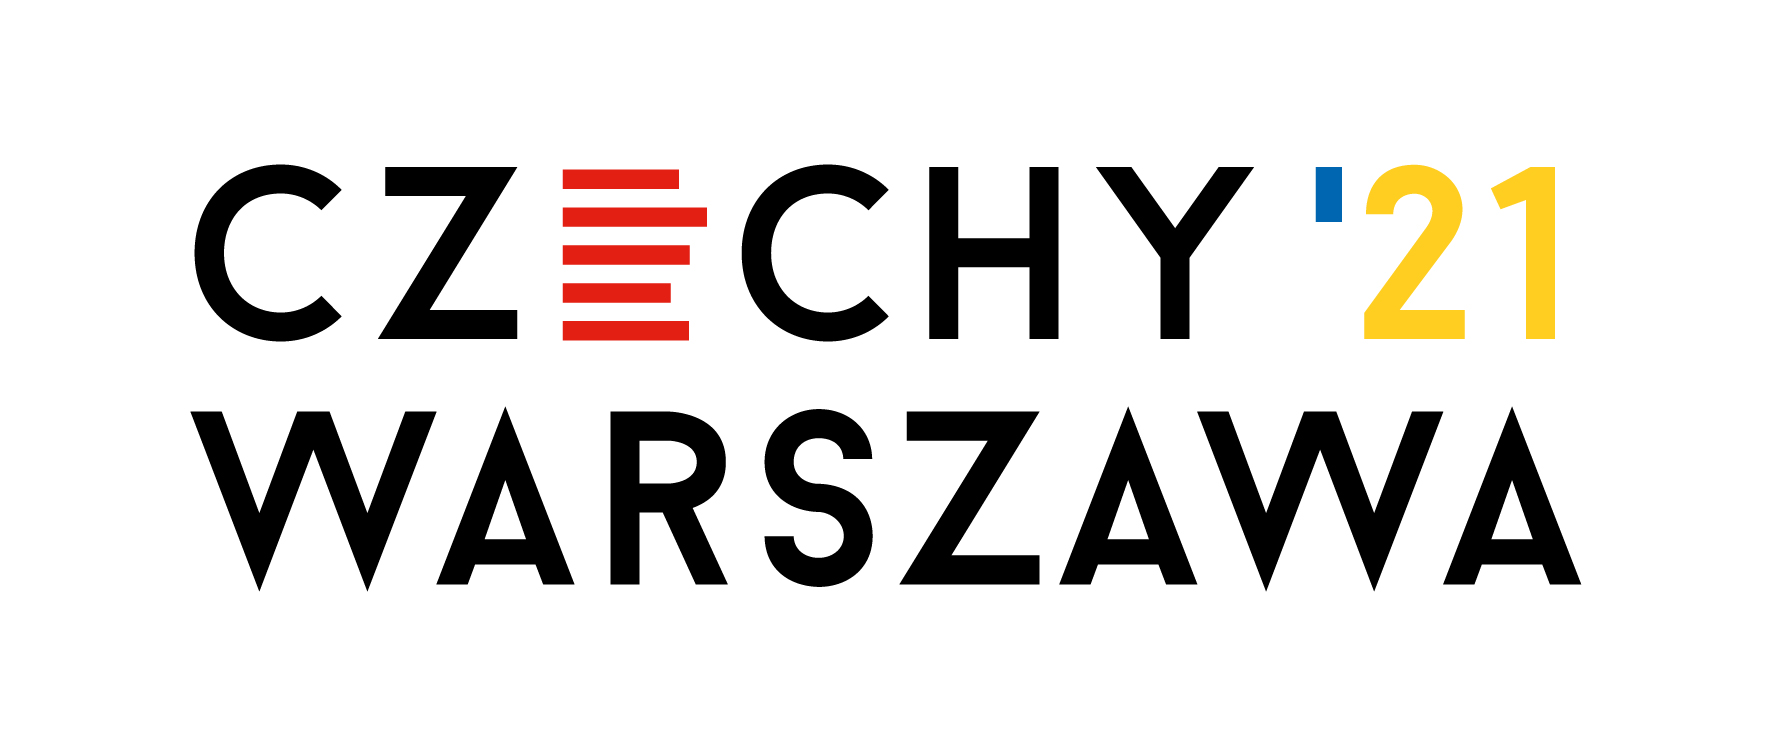 Czechy gościem honorowym Warszawskich Targów Książki 2021!